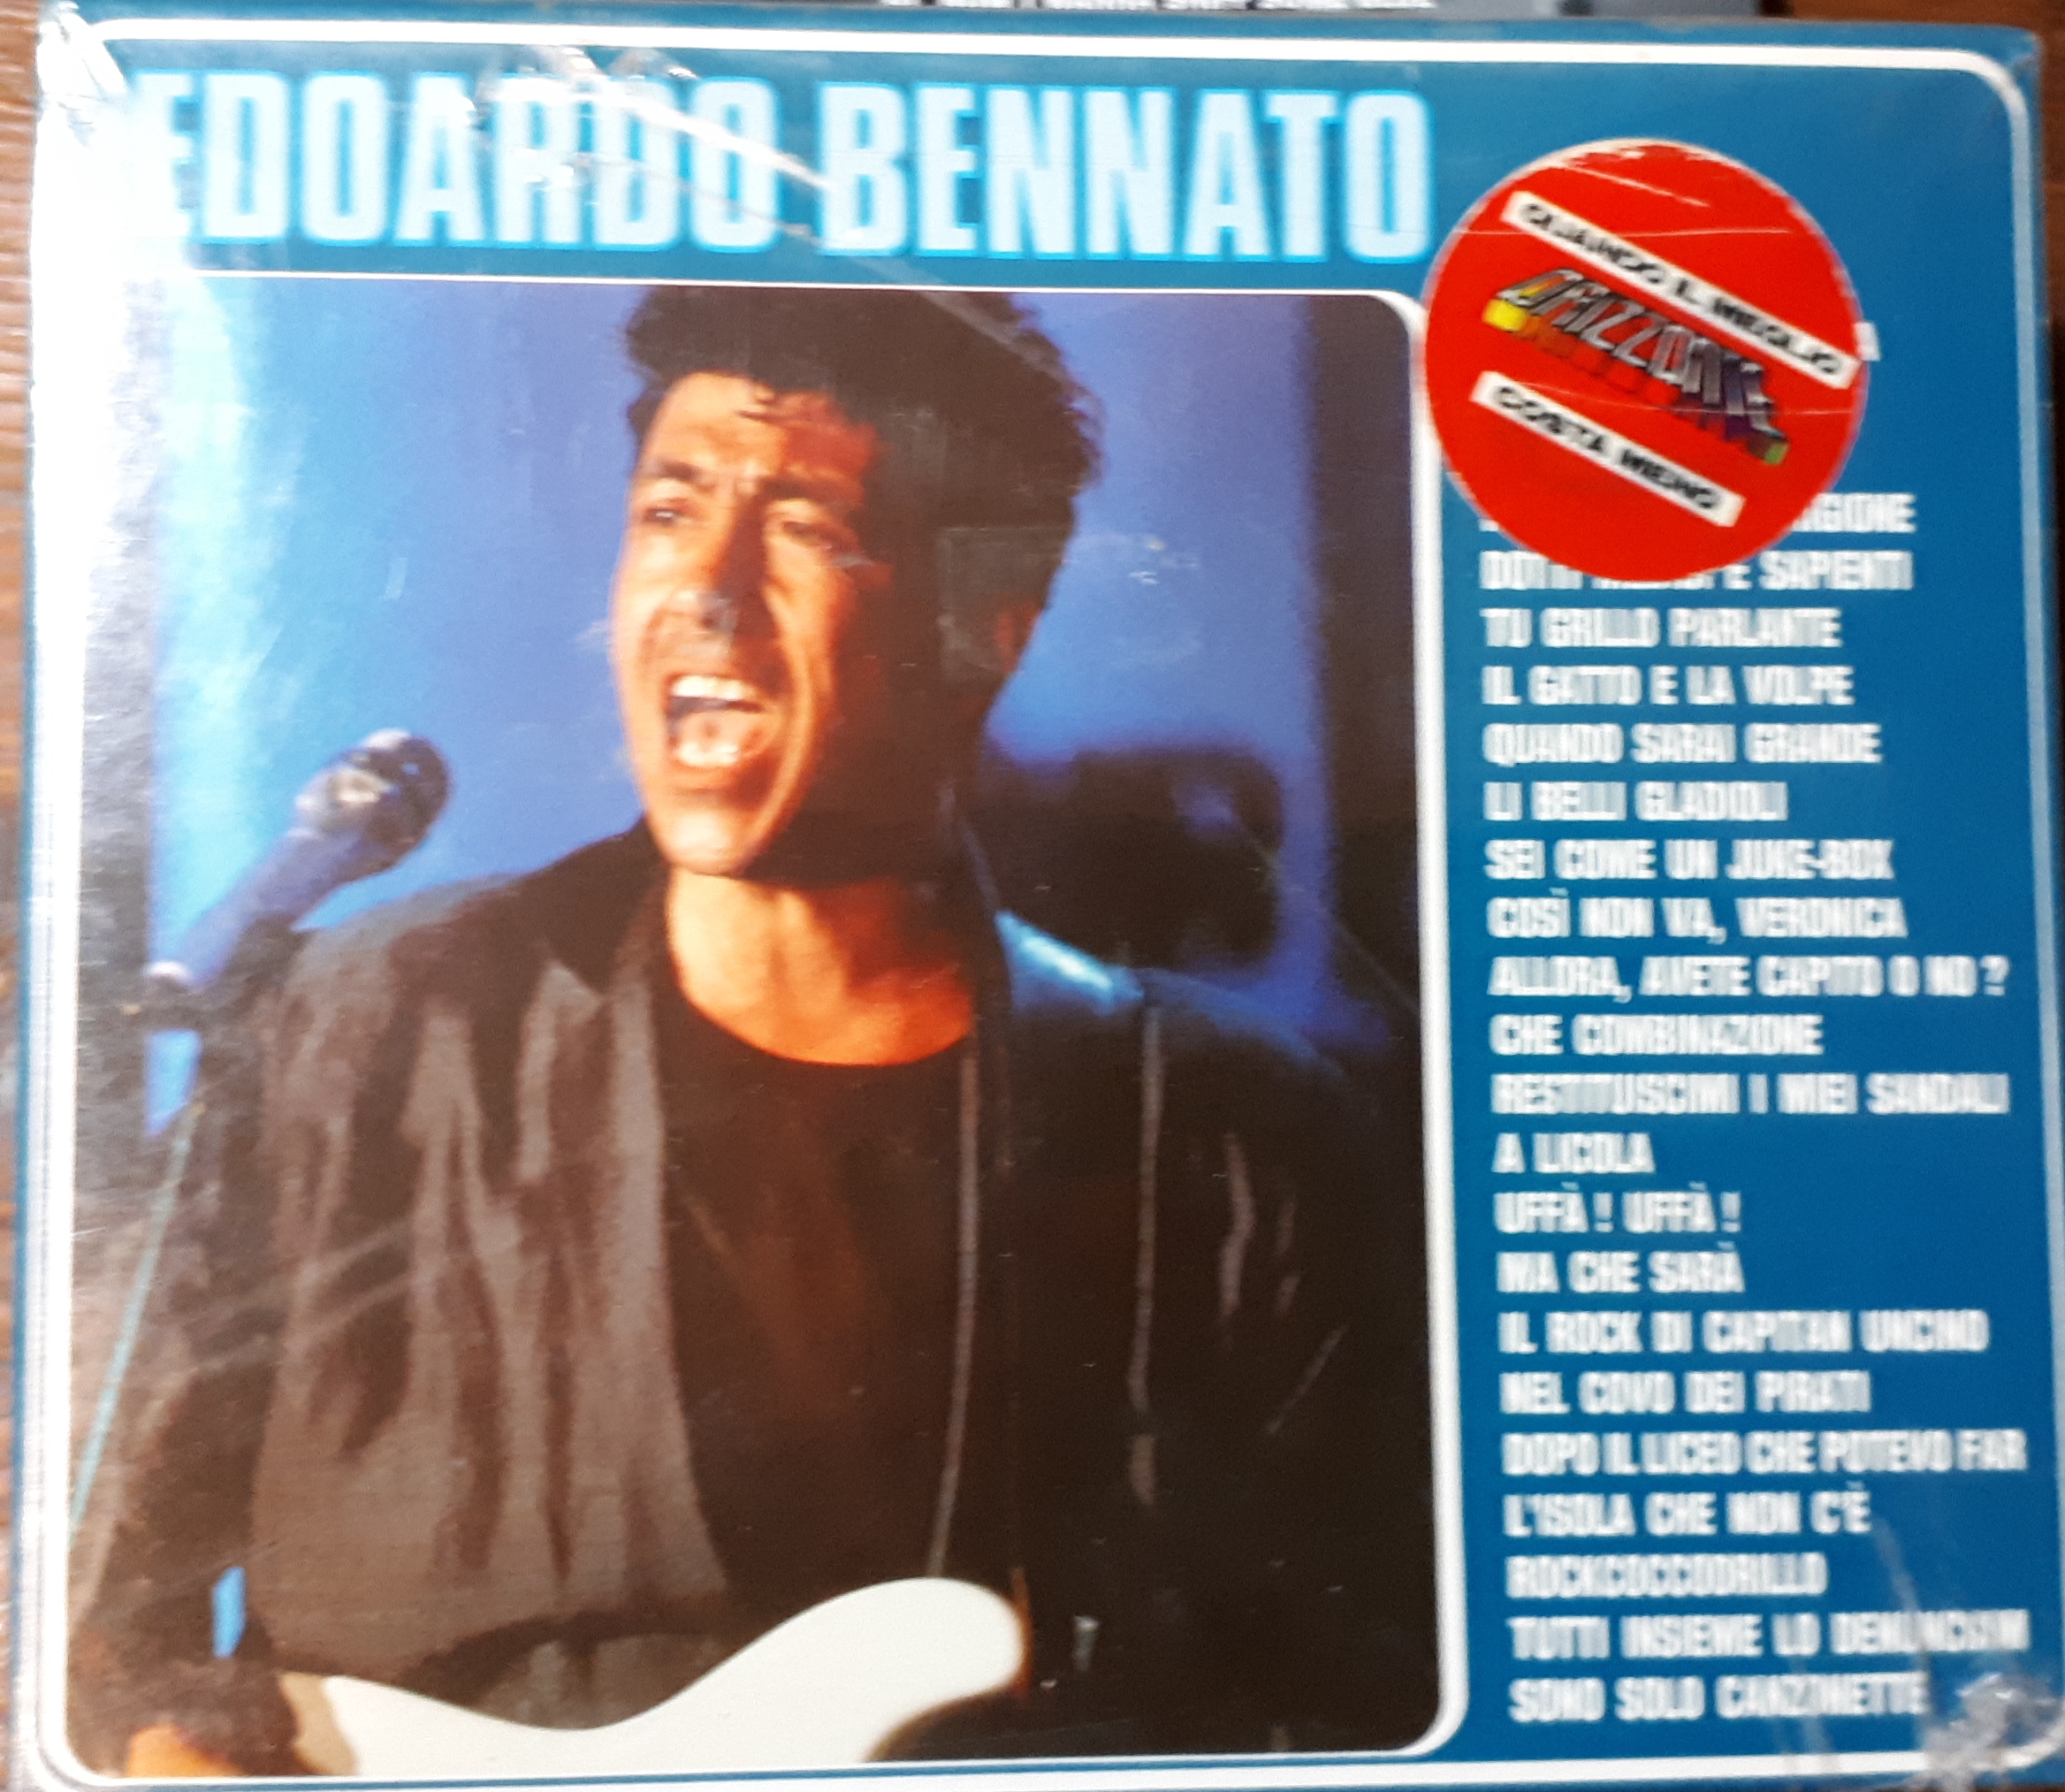 Edoardo bennato - Edoardo Bennato 3 cd